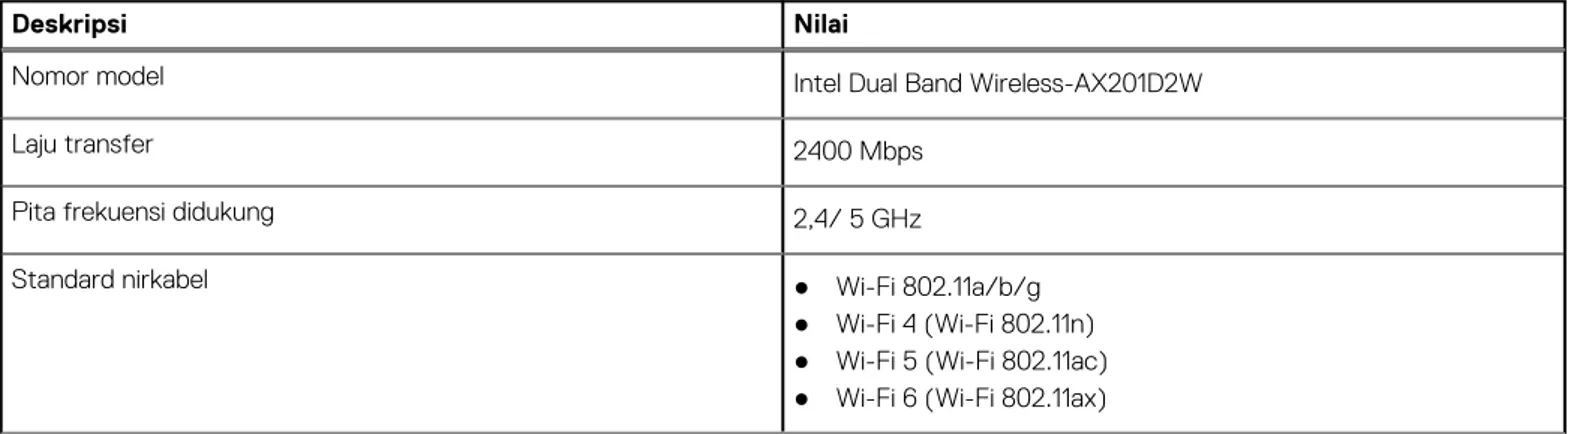 Tabel berikut mencantumkan modul Wireless Local Area Network (WLAN) yang didukung di Latitude 7320 Dapat Dilepas Anda.